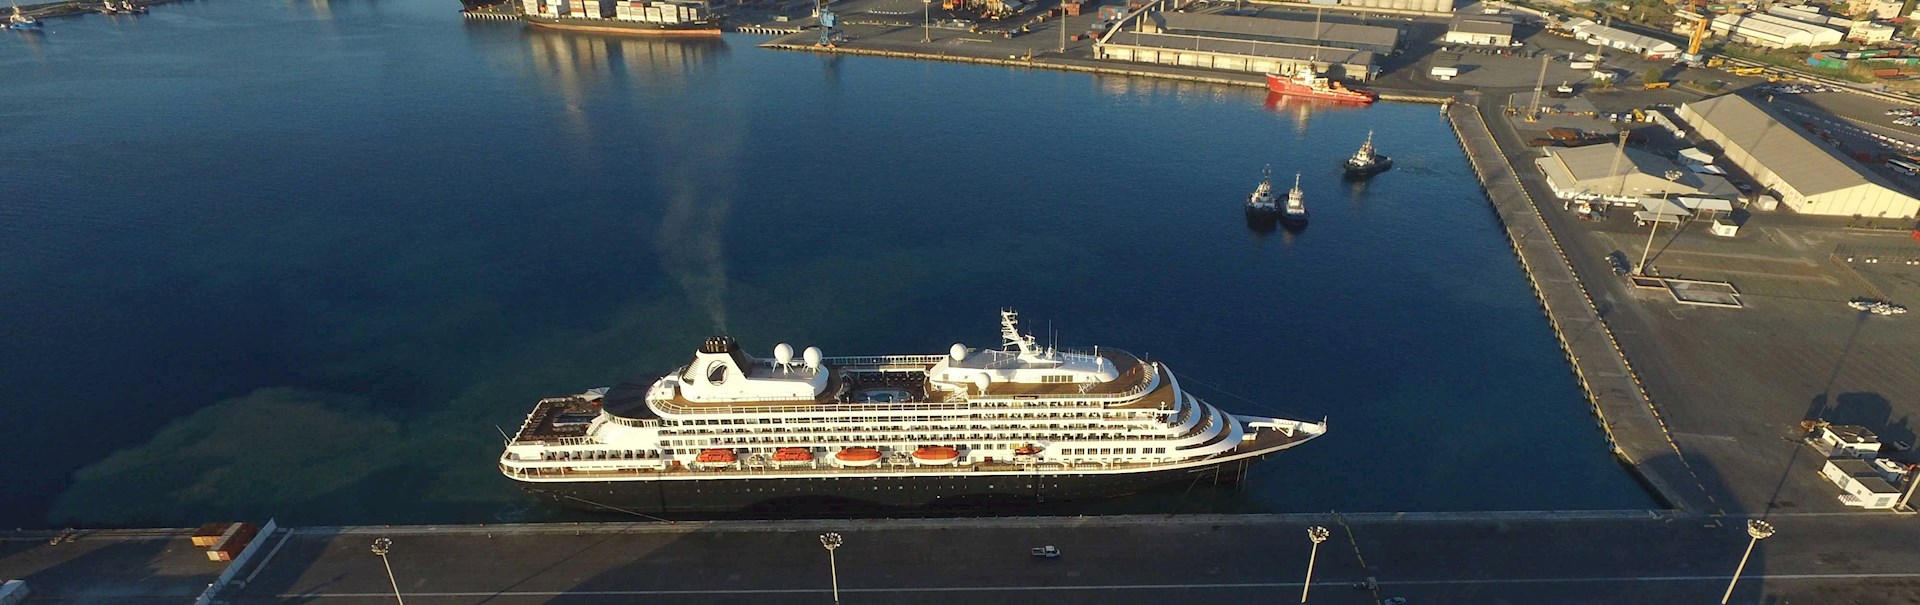 Cruise Ship Dock Quebec City